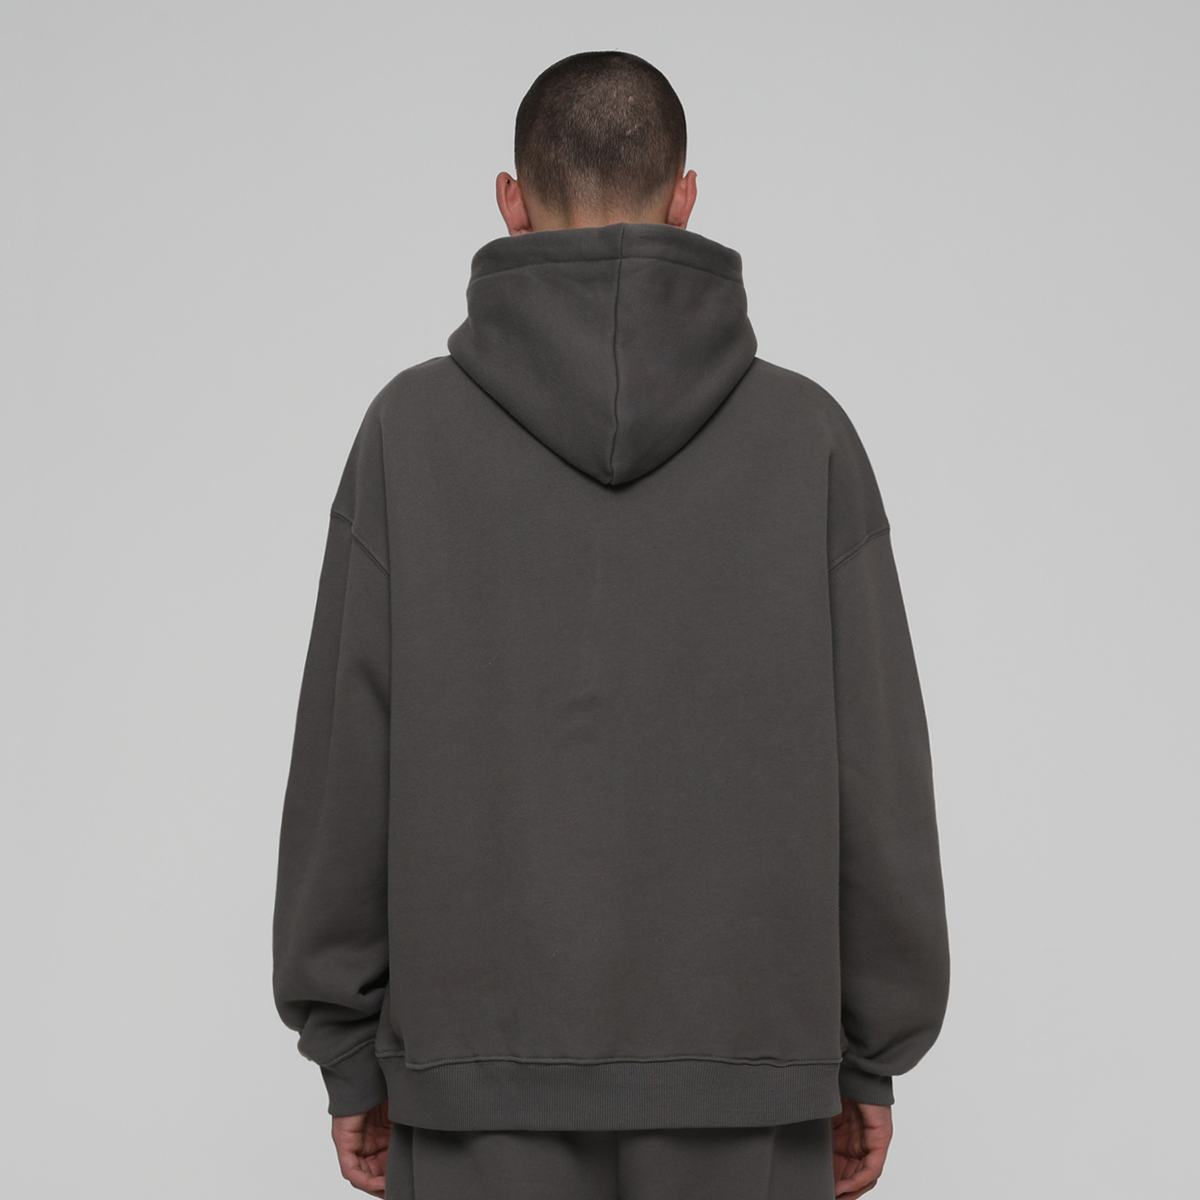 Low Lights Studios Boxer Zip-hoodie Hooded vesten Heren washed grey maat: S beschikbare maaten:S M L XL XXL